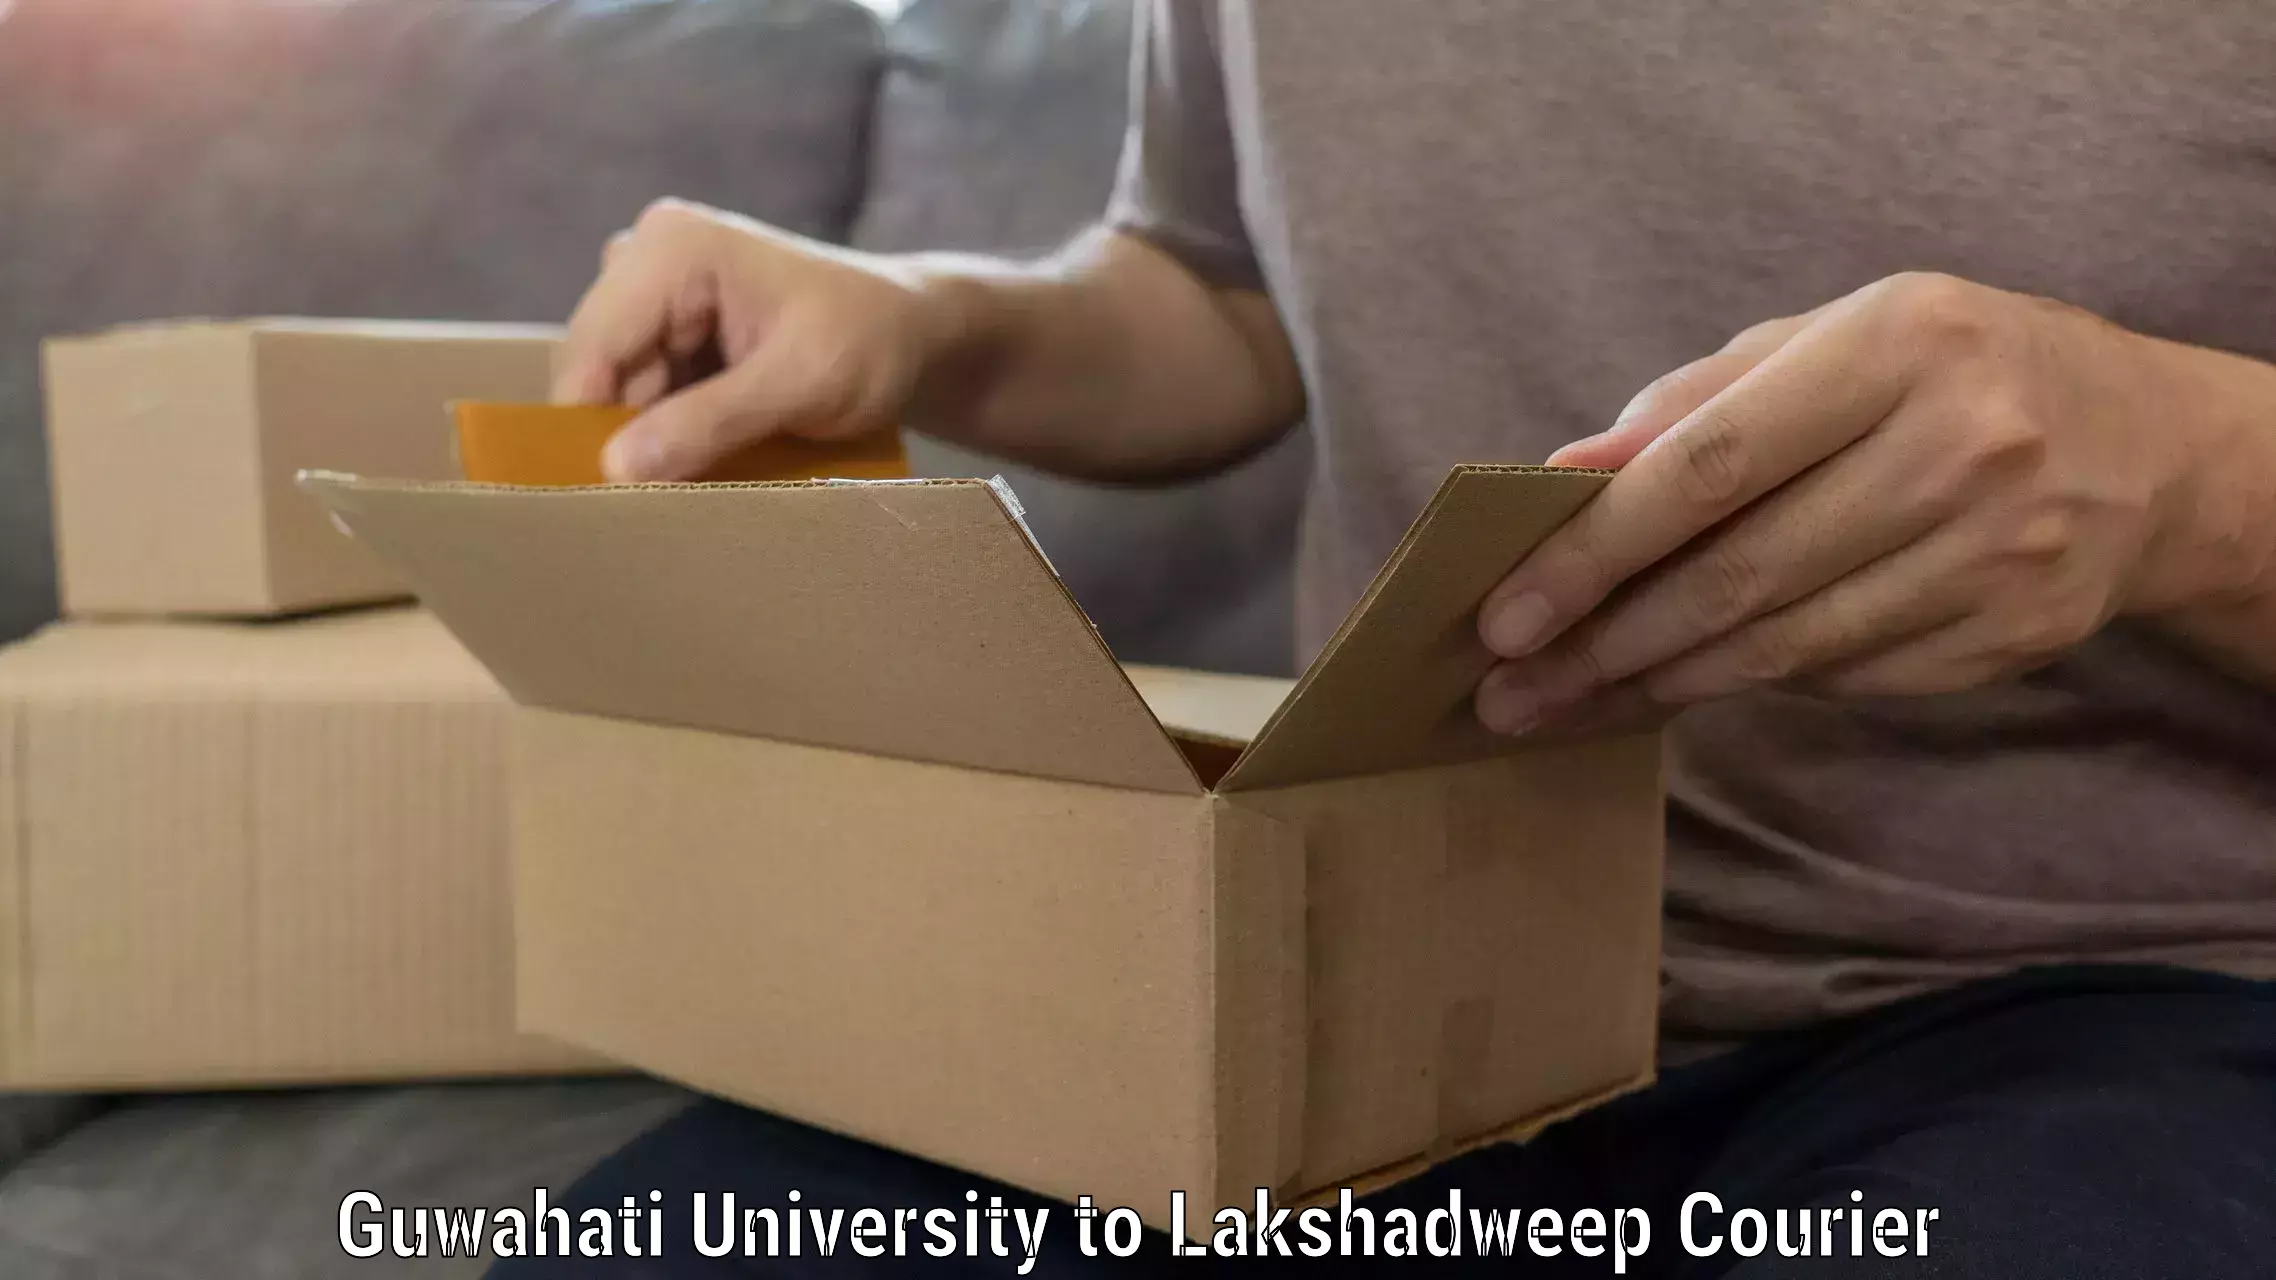 Furniture moving strategies Guwahati University to Lakshadweep